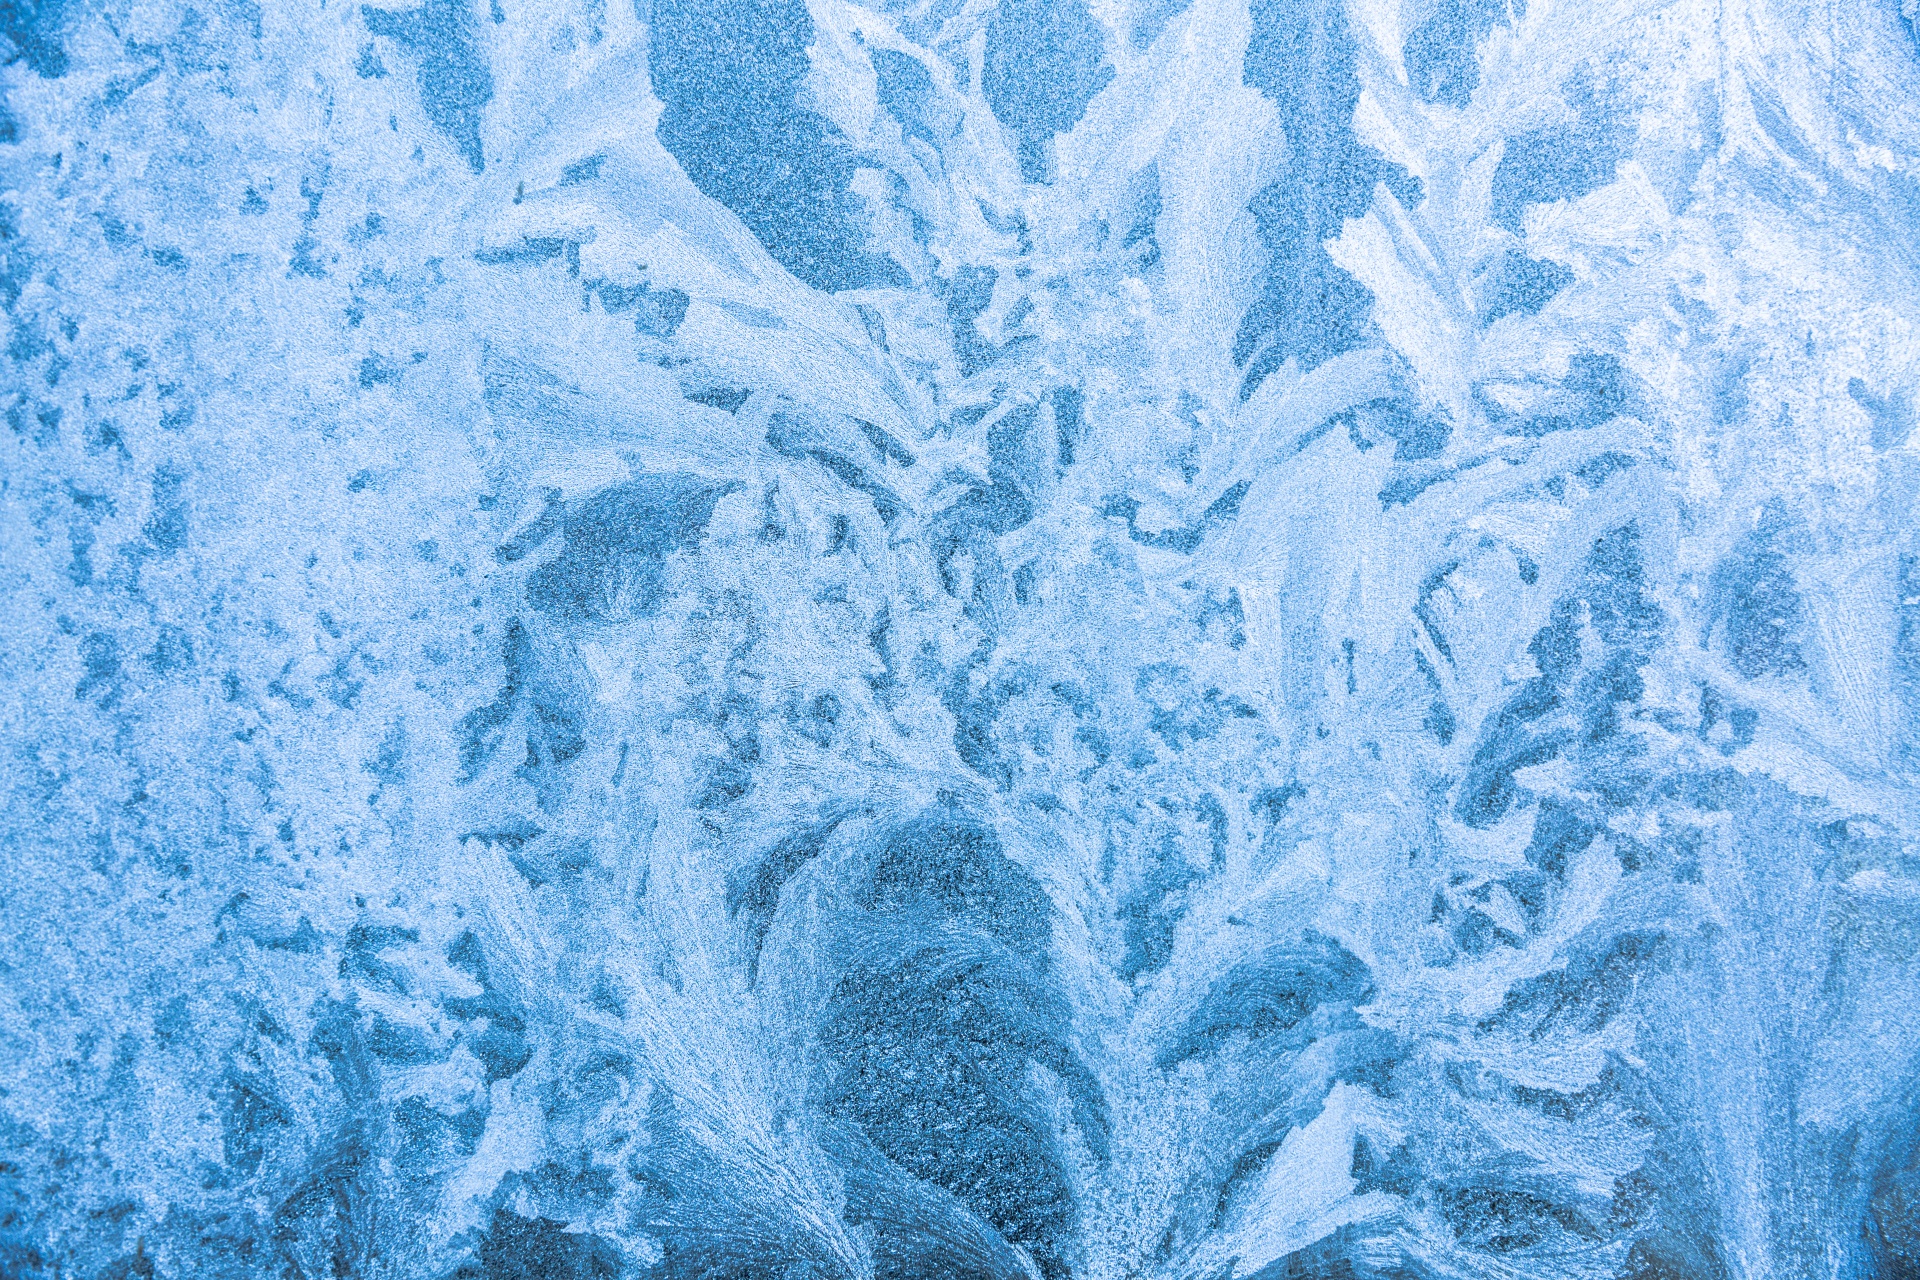 Blue frost pattern on a window